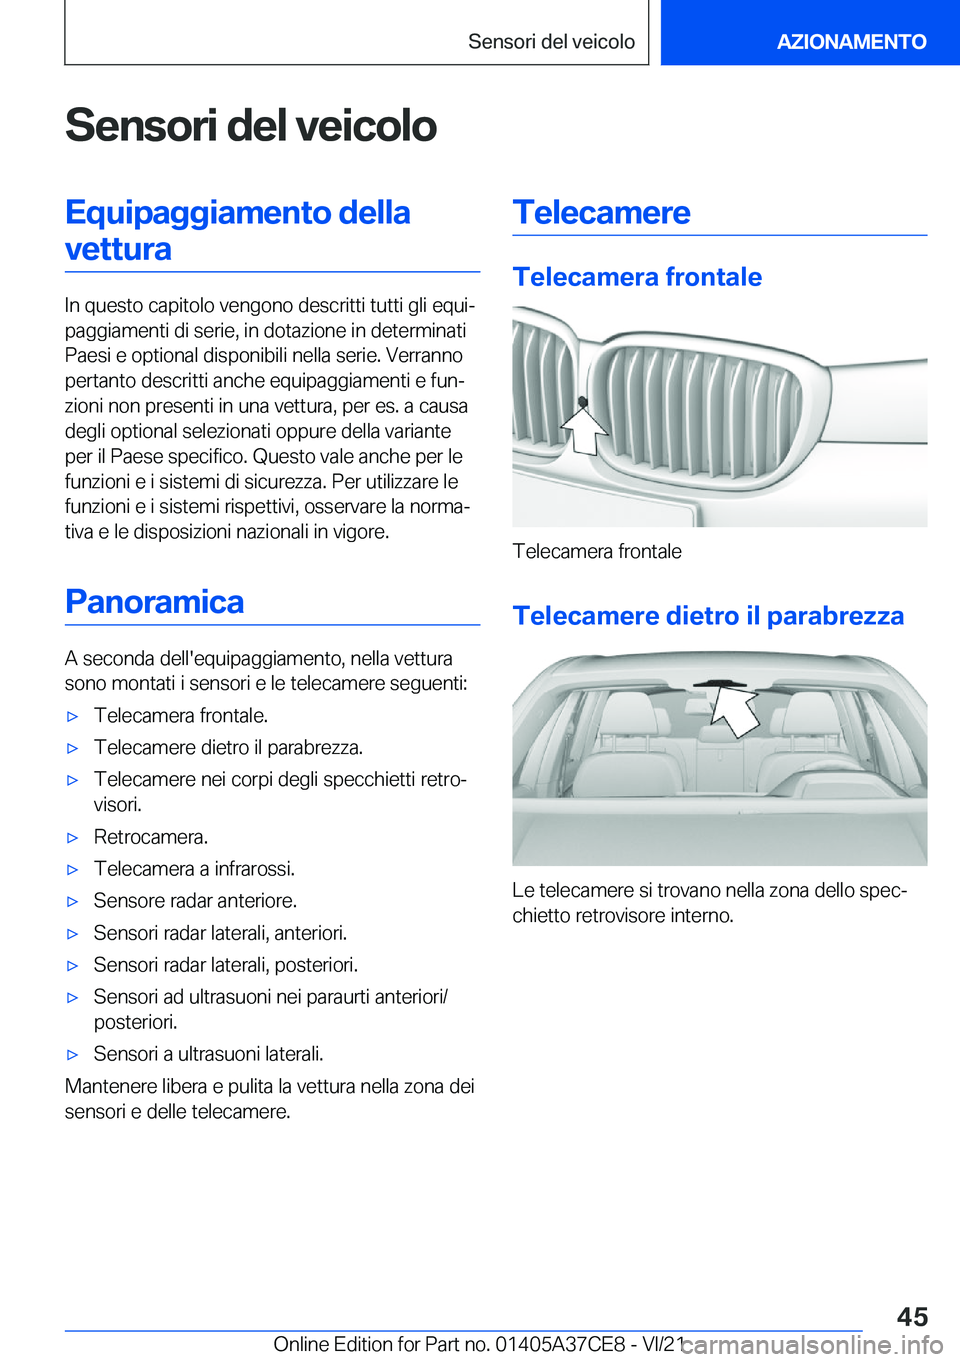 BMW X5 2022  Libretti Di Uso E manutenzione (in Italian) �S�e�n�s�o�r�i��d�e�l��v�e�i�c�o�l�o�E�q�u�i�p�a�g�g�i�a�m�e�n�t�o��d�e�l�l�a�v�e�t�t�u�r�a
�I�n��q�u�e�s�t�o��c�a�p�i�t�o�l�o��v�e�n�g�o�n�o��d�e�s�c�r�i�t�t�i��t�u�t�t�i��g�l�i��e�q�u�iª